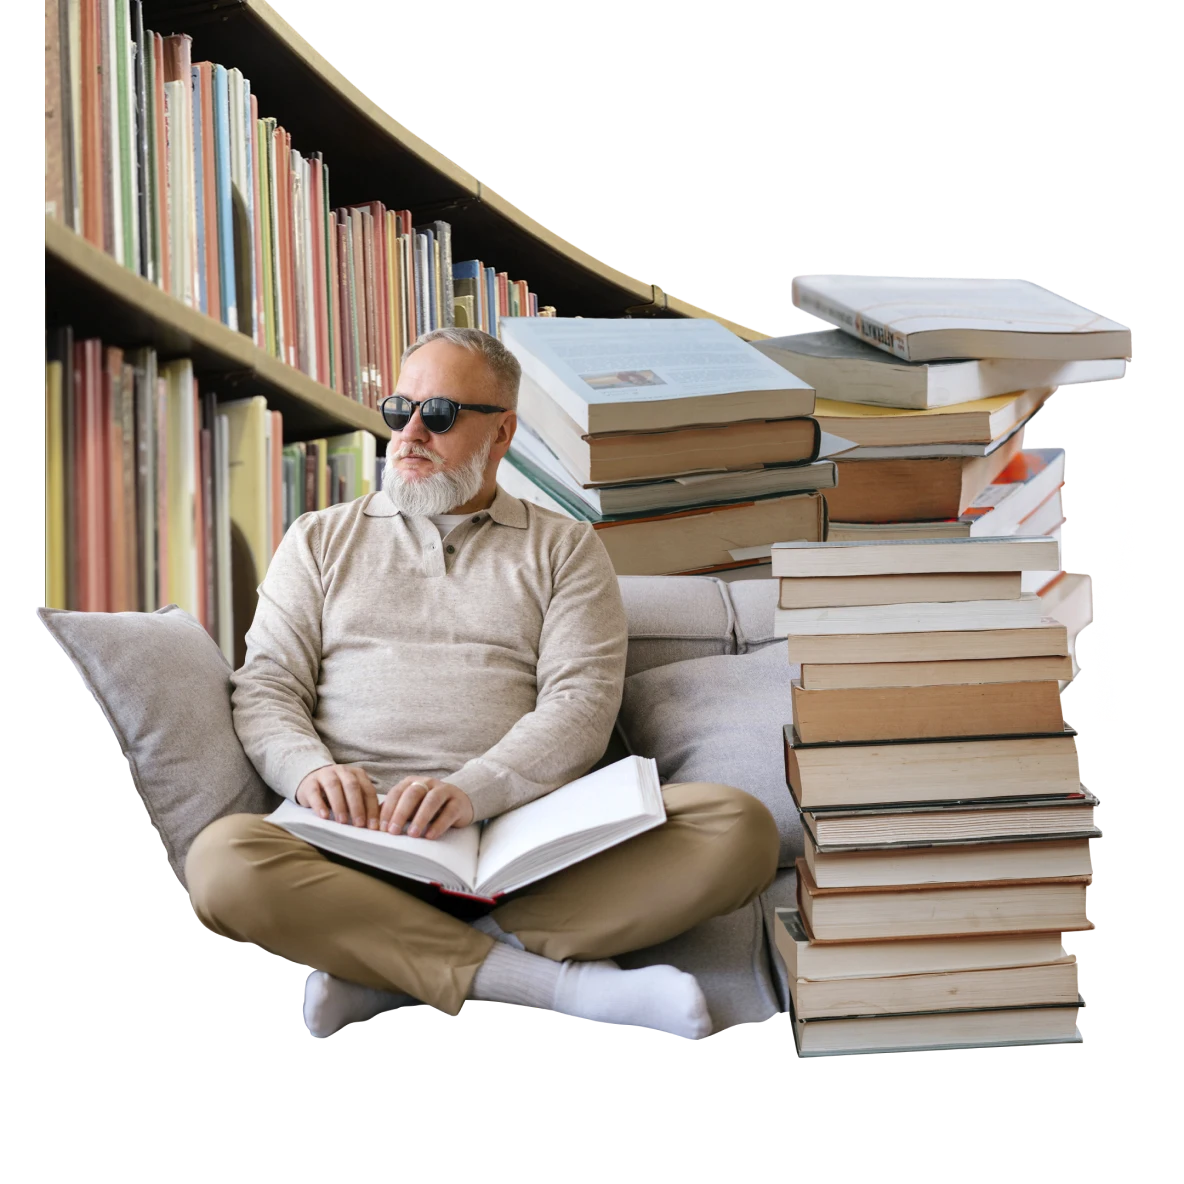 Homem branco com deficiência visual usando óculos escuros, sentado com as pernas cruzadas lendo braille. Ele está cercado por pilhas de livros e uma estante de livros da biblioteca.